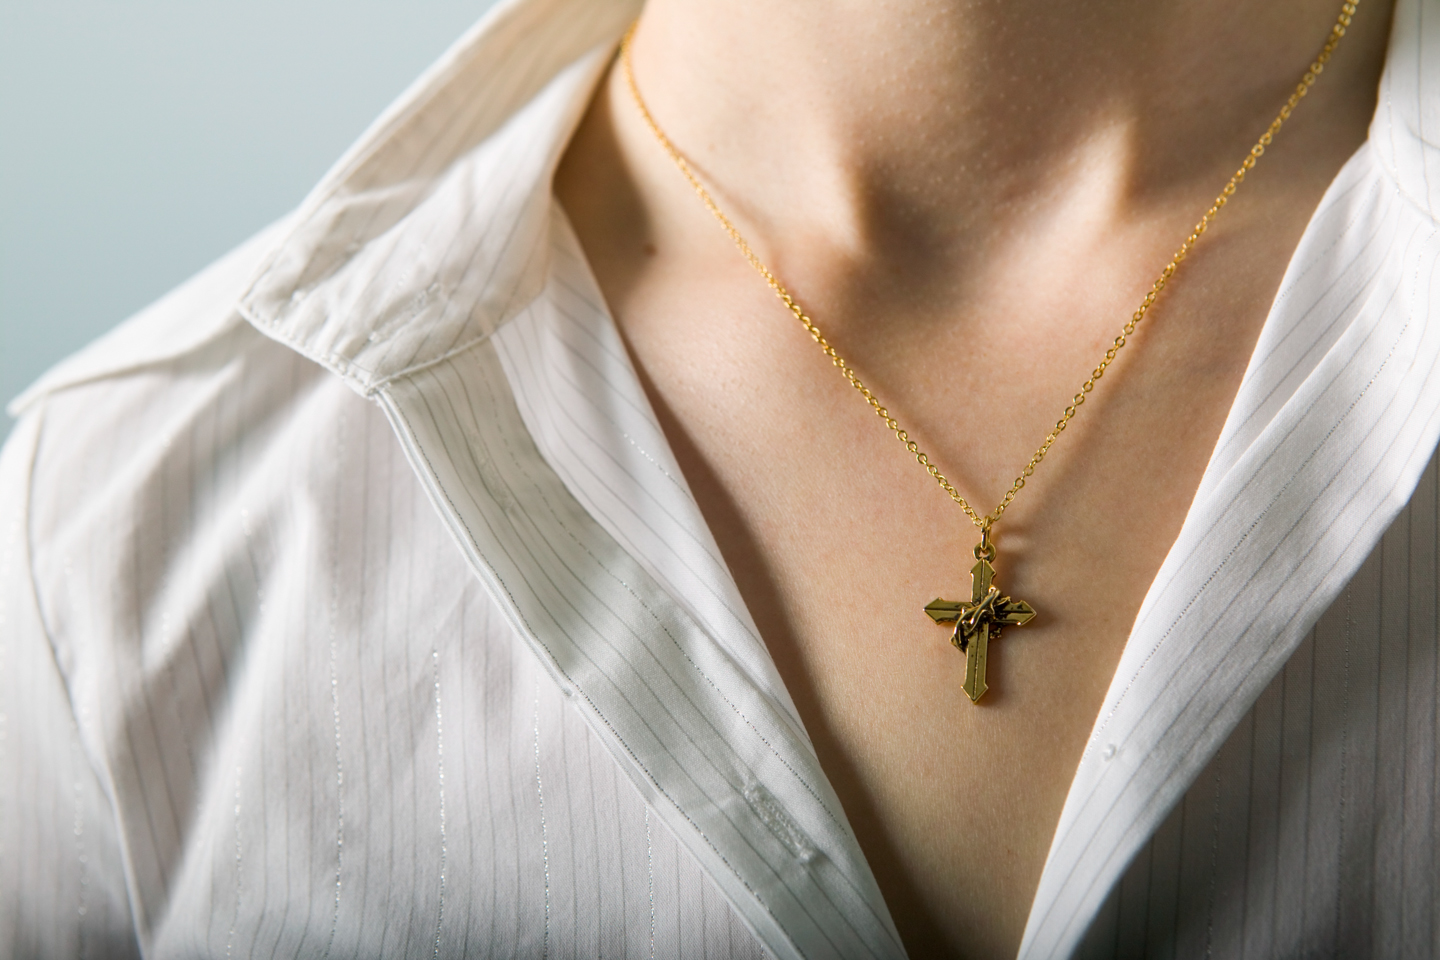 Woman wearing cross necklace